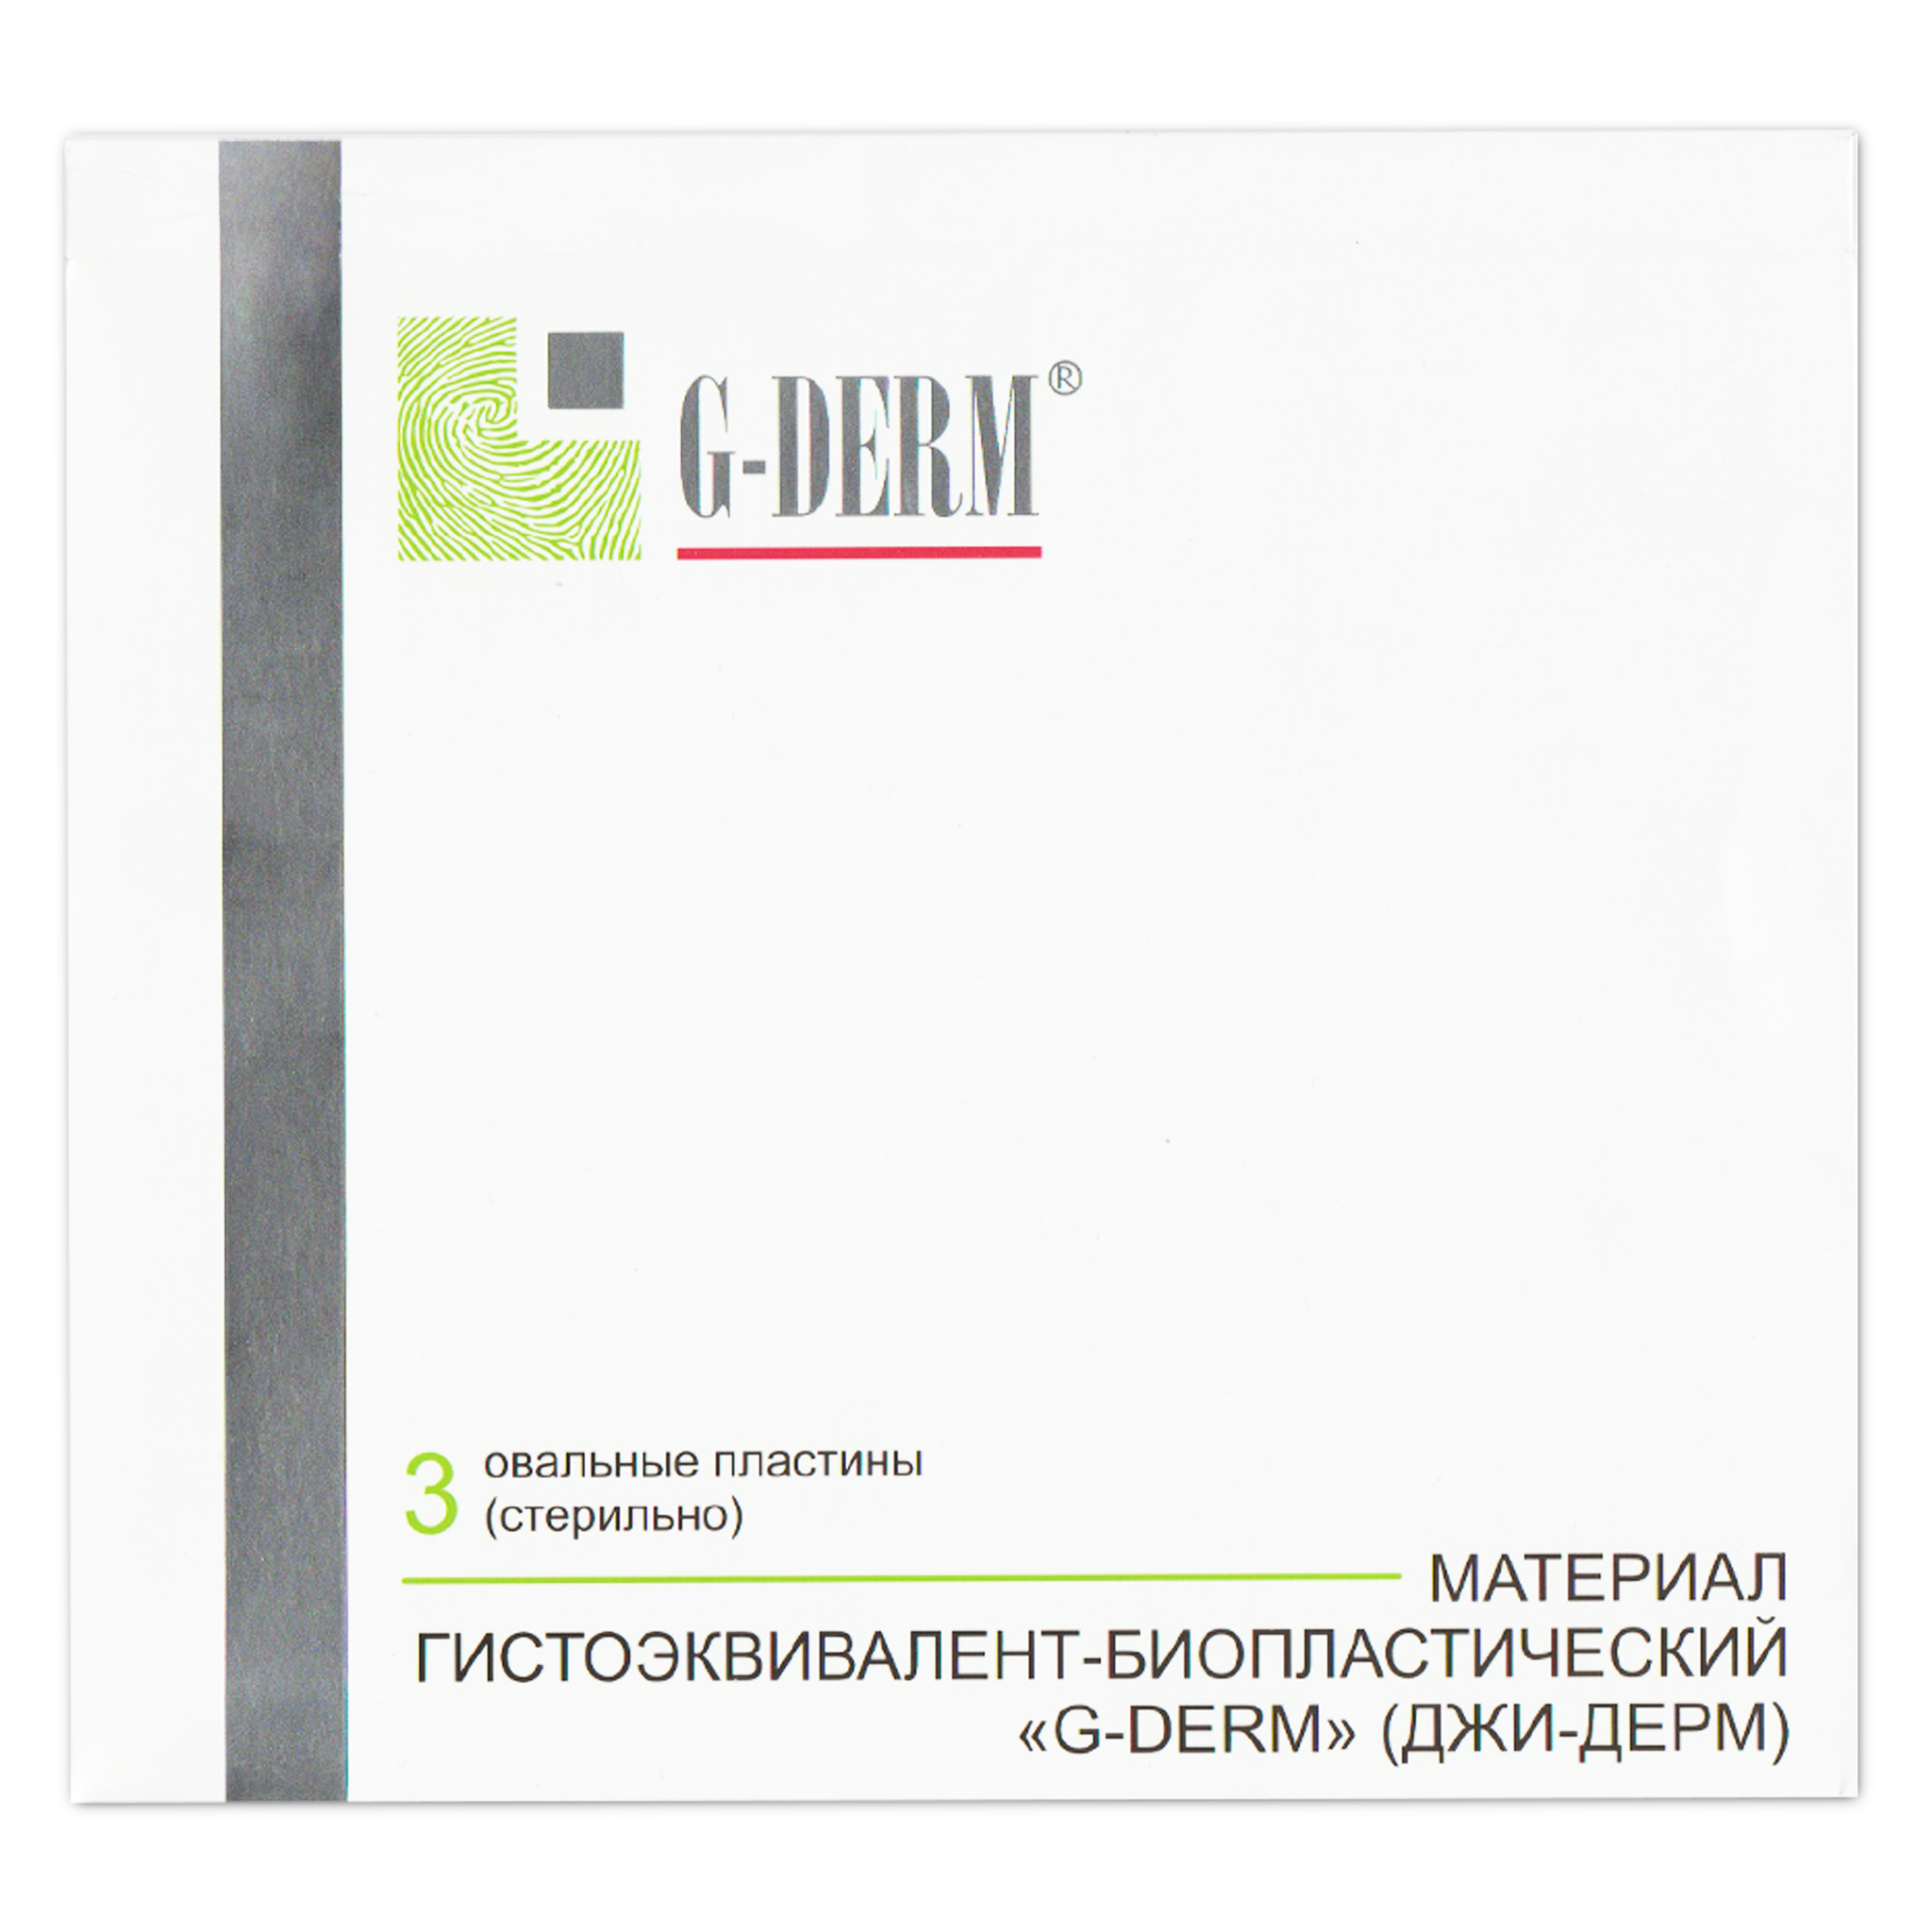 G derm косметика. Джи-дерм (g-Derm) - материал гистоэквивалент-биопластический «биокожа». ГИАВИТ G-Derm. Косметика g-Derm профессионал.